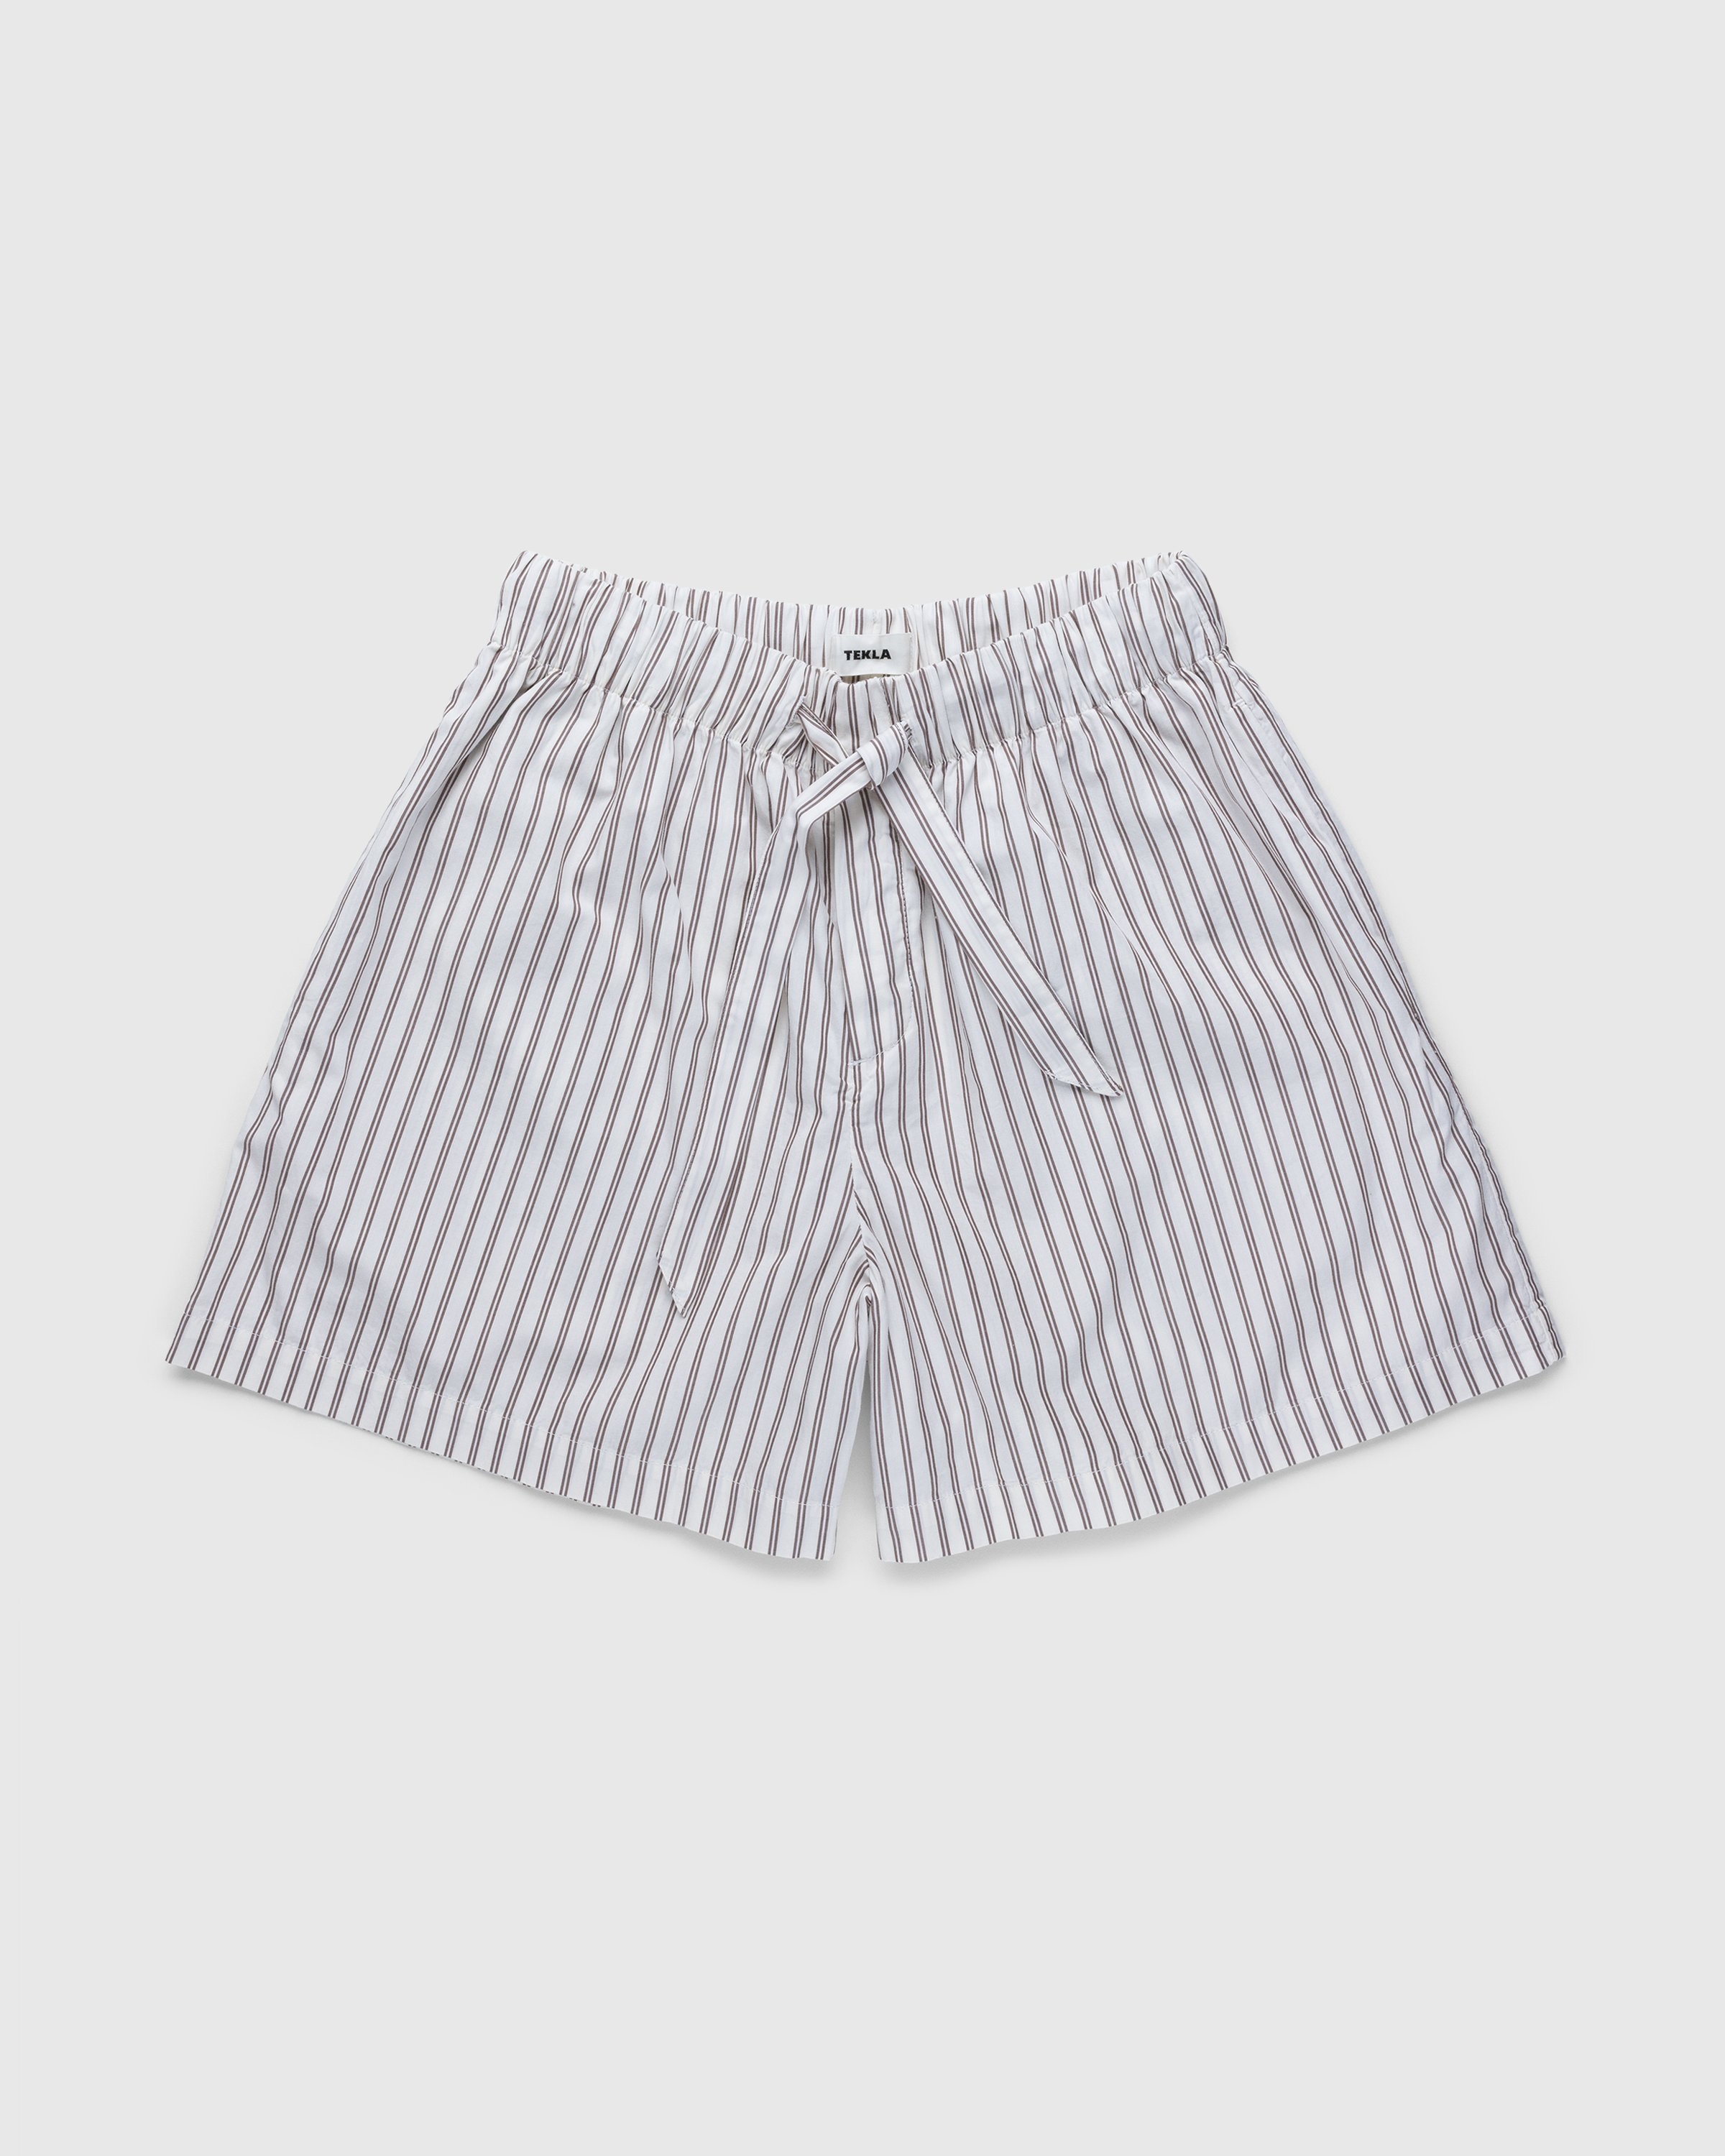 Tekla – Cotton Poplin Pyjamas Shorts Hopper Stripes - Loungewear - Beige - Image 1